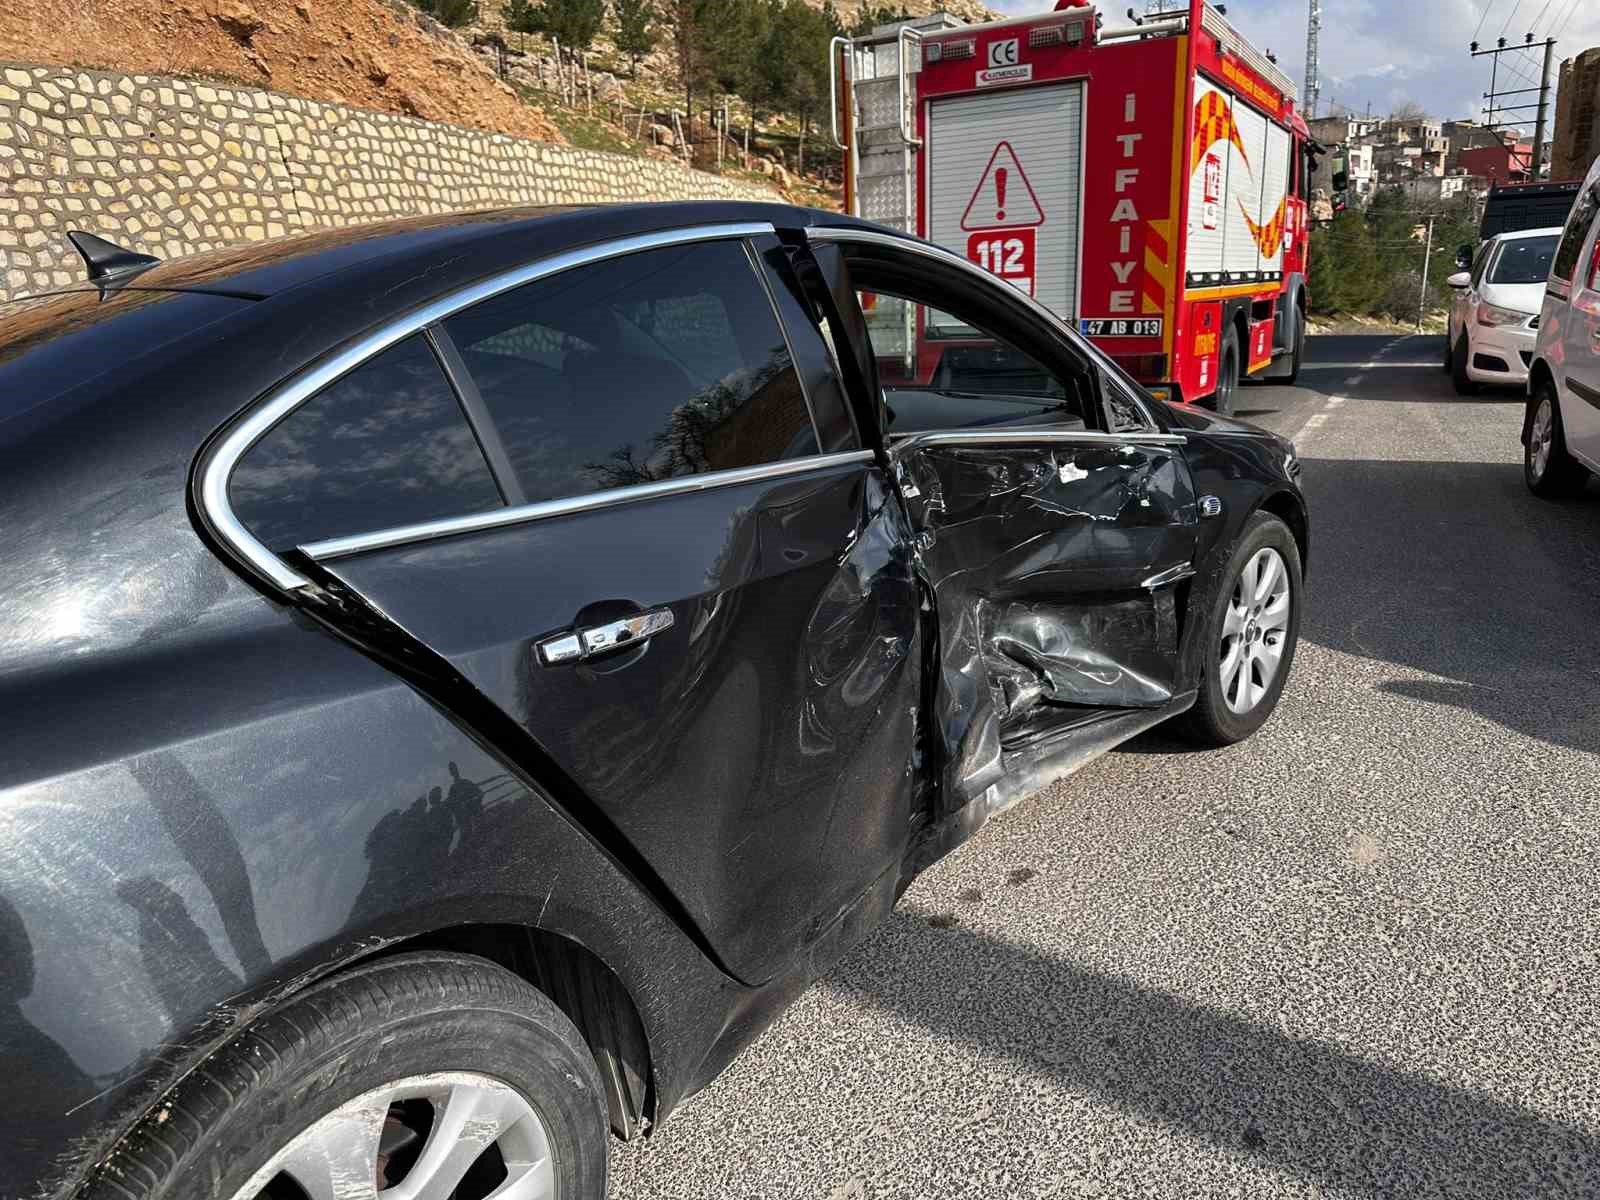 Mardin’de iki otomobil çarpıştı: 2 yaralı
